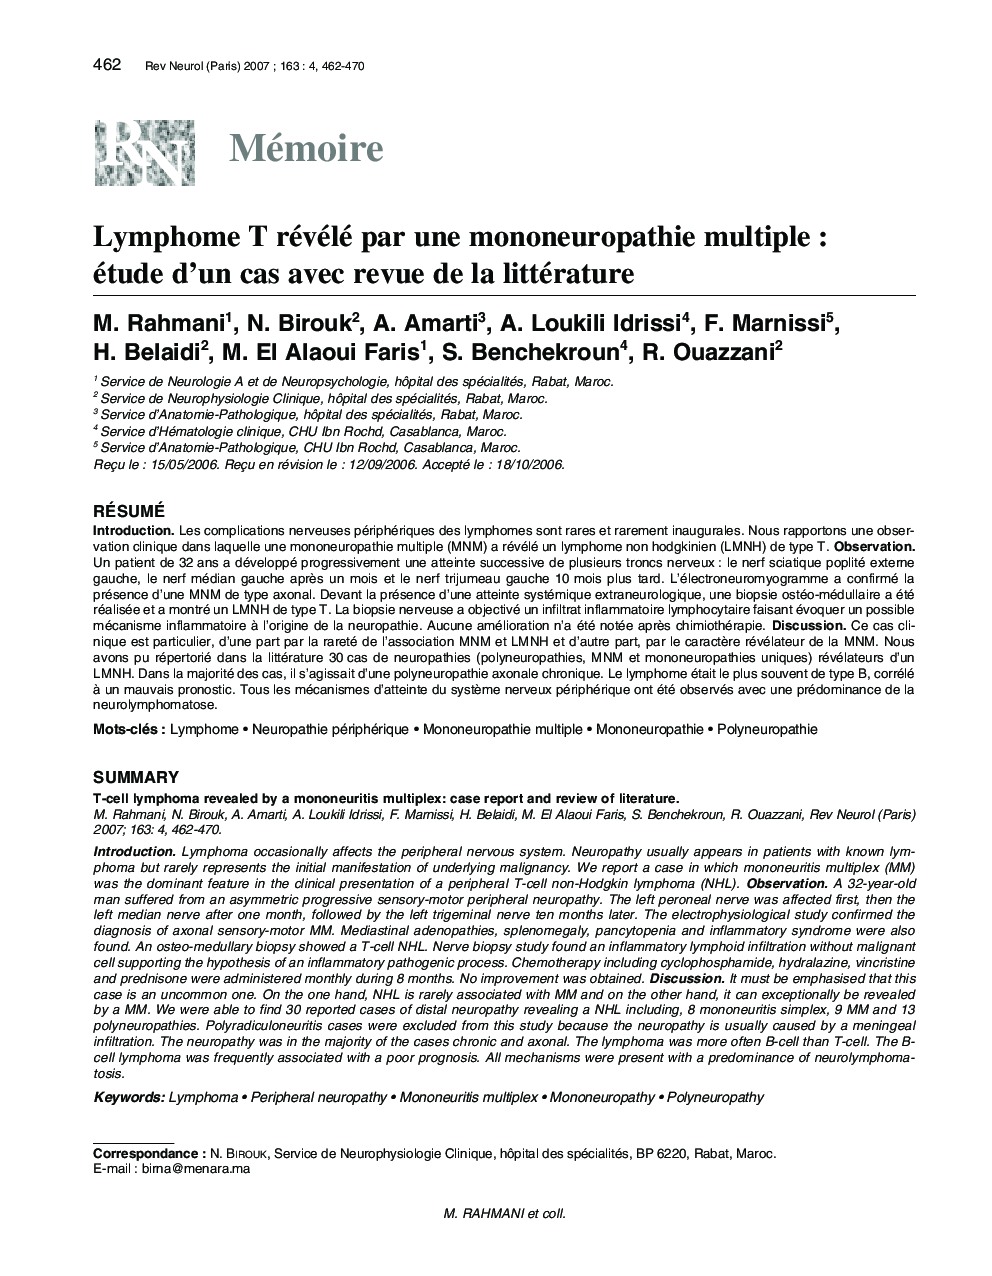 Lymphome T révélé par une mononeuropathie multiple : étude d'un cas avec revue de la littérature